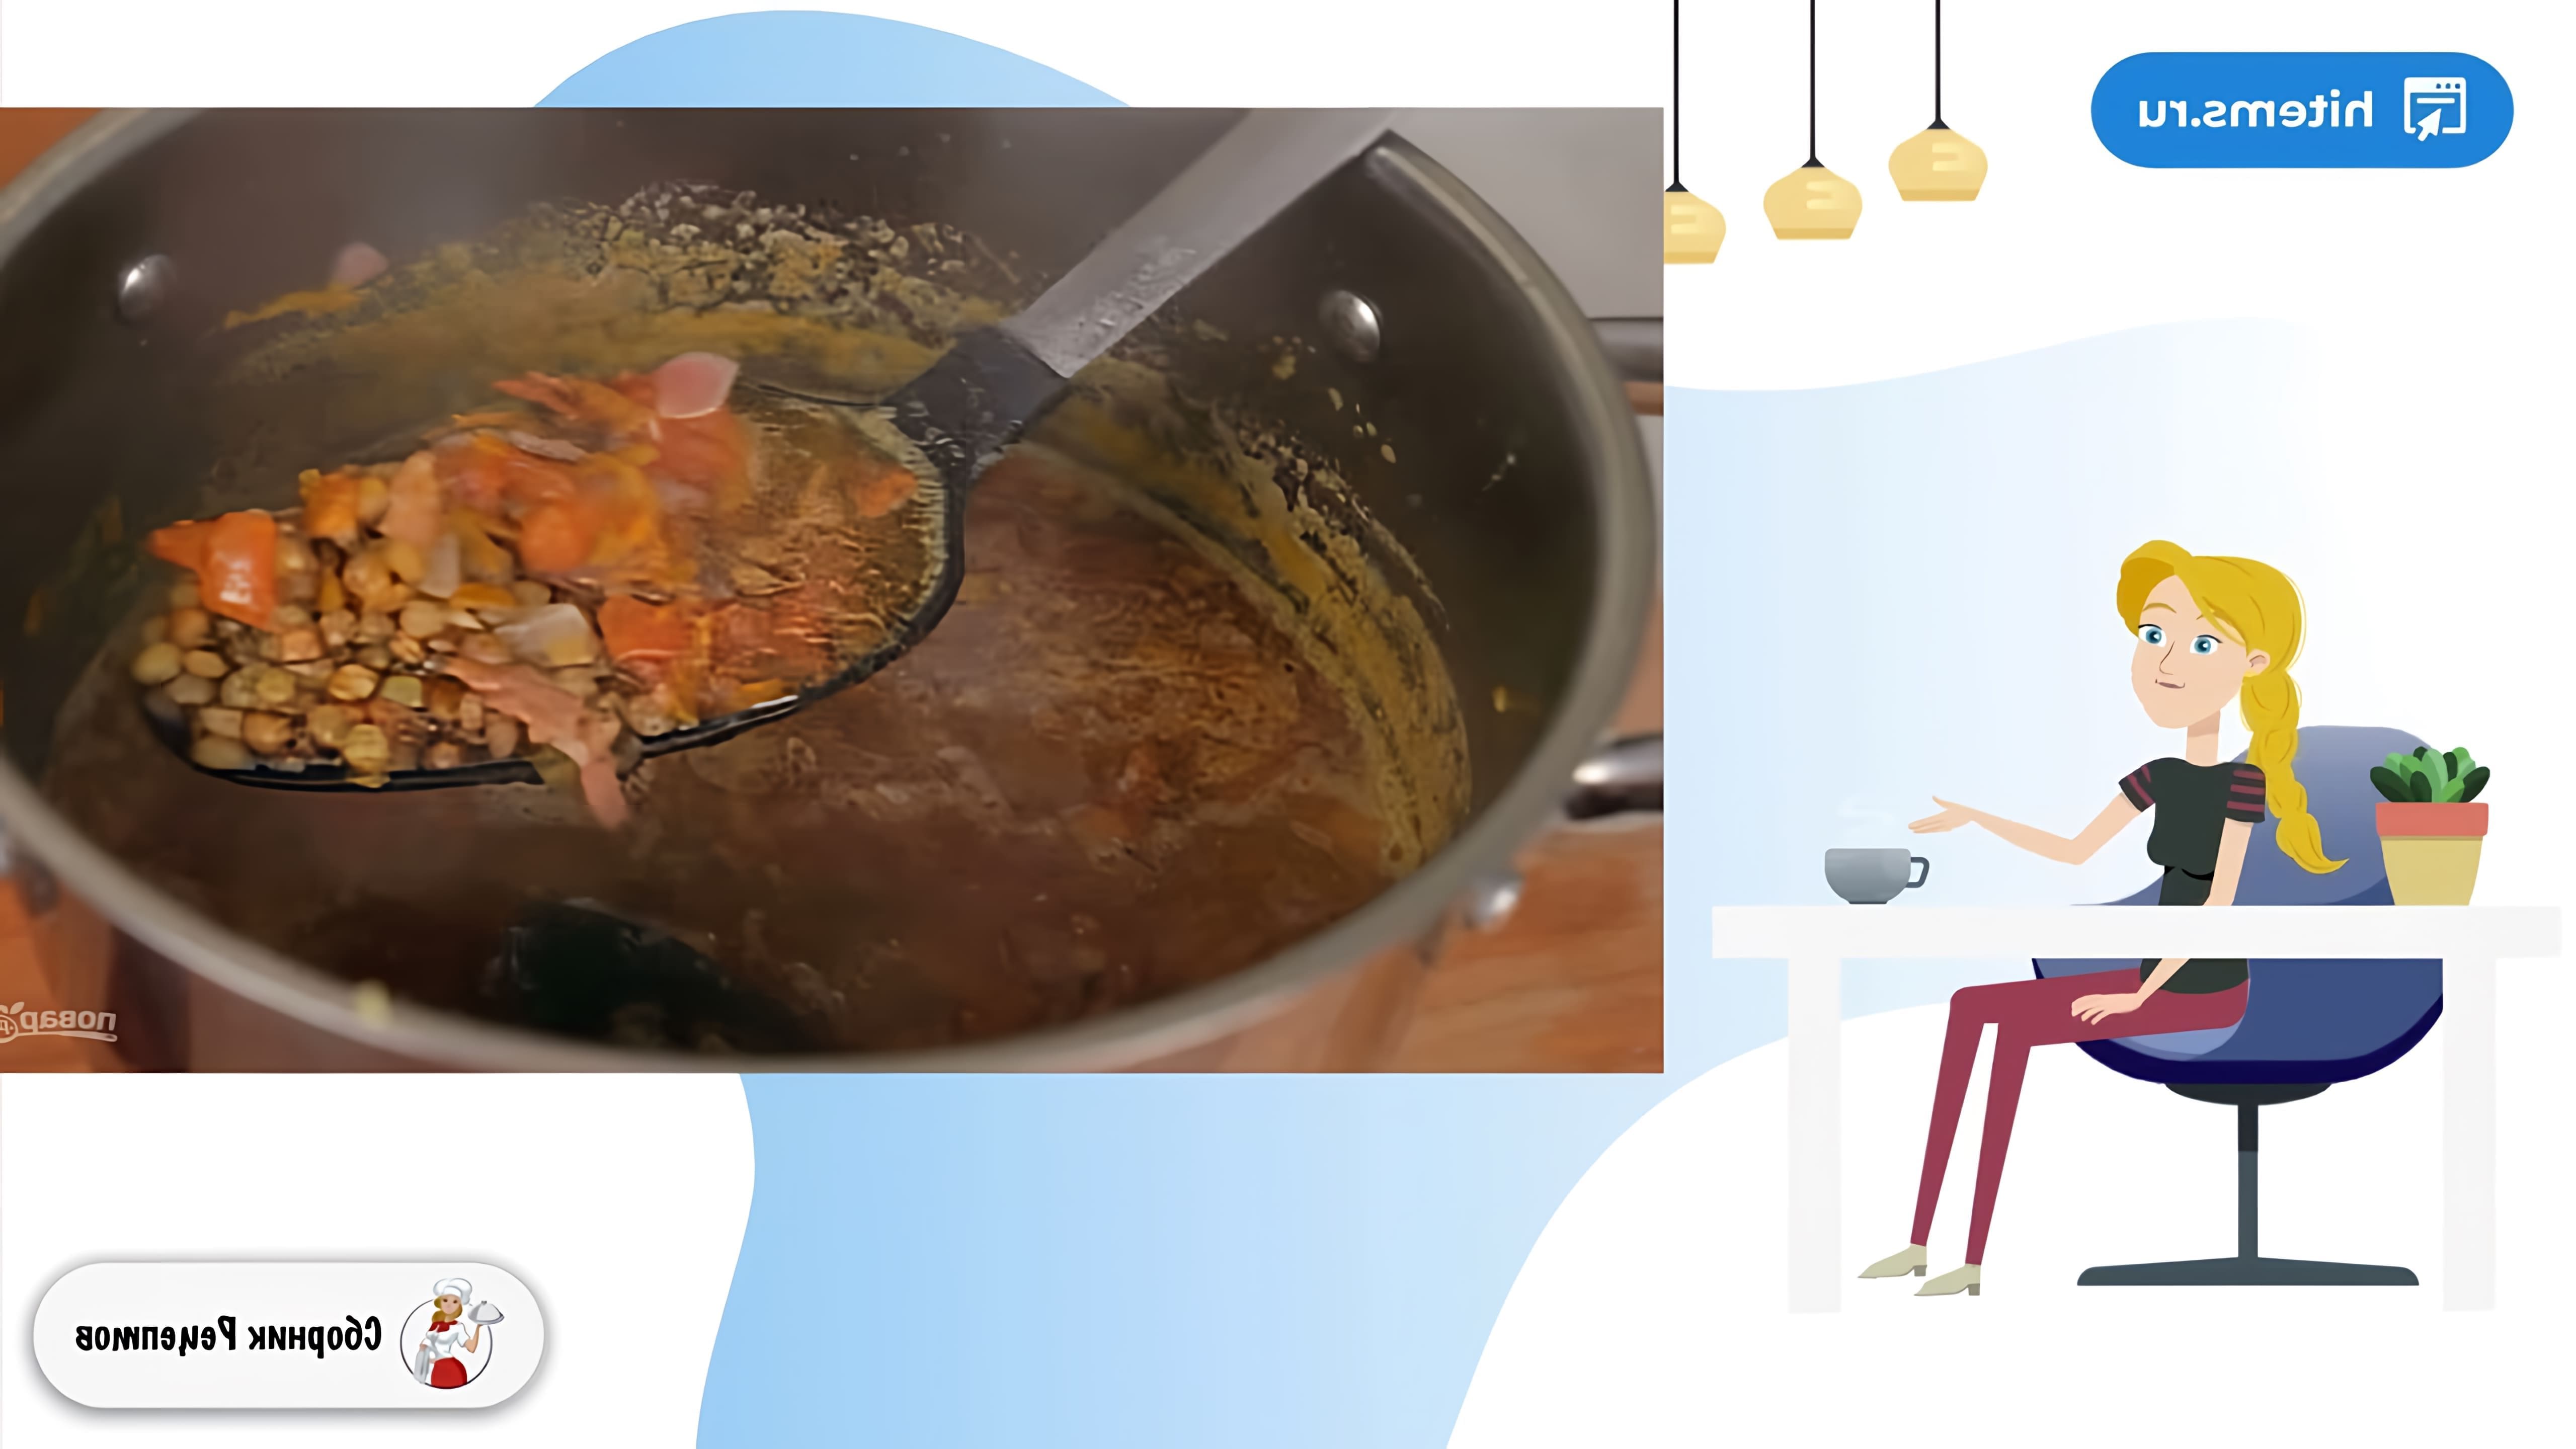 В этом видео демонстрируется рецепт приготовления супа из чечевицы с беконом